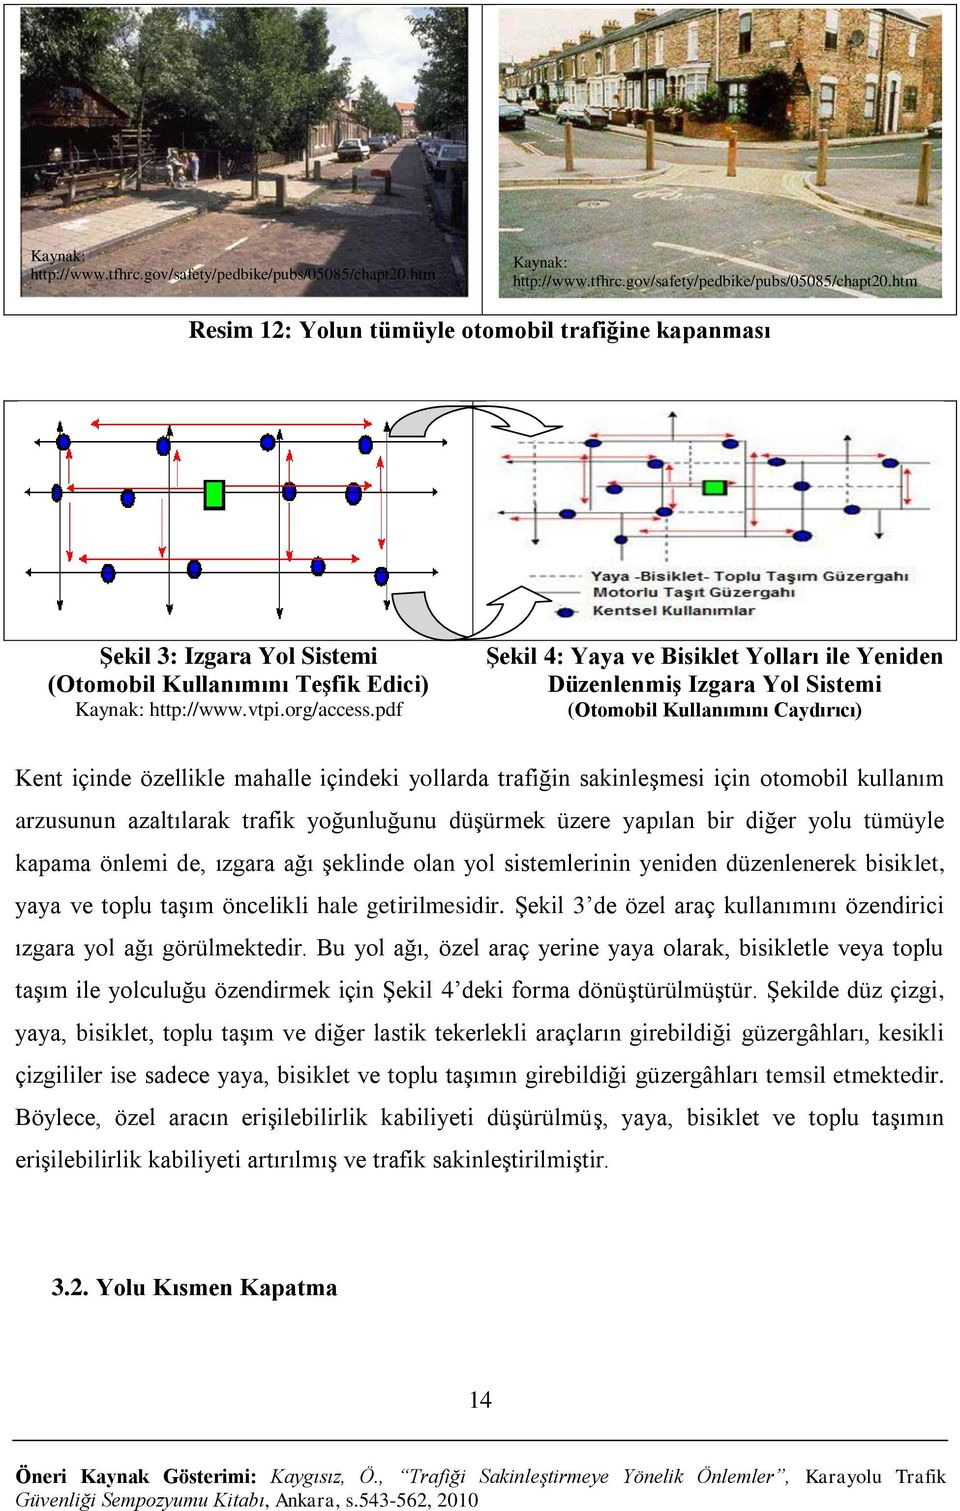 pdf ġekil 4: Yaya ve Bisiklet Yolları ile Yeniden DüzenlenmiĢ Izgara Yol Sistemi (Otomobil Kullanımını Caydırıcı) Kent içinde özellikle mahalle içindeki yollarda trafiğin sakinleşmesi için otomobil